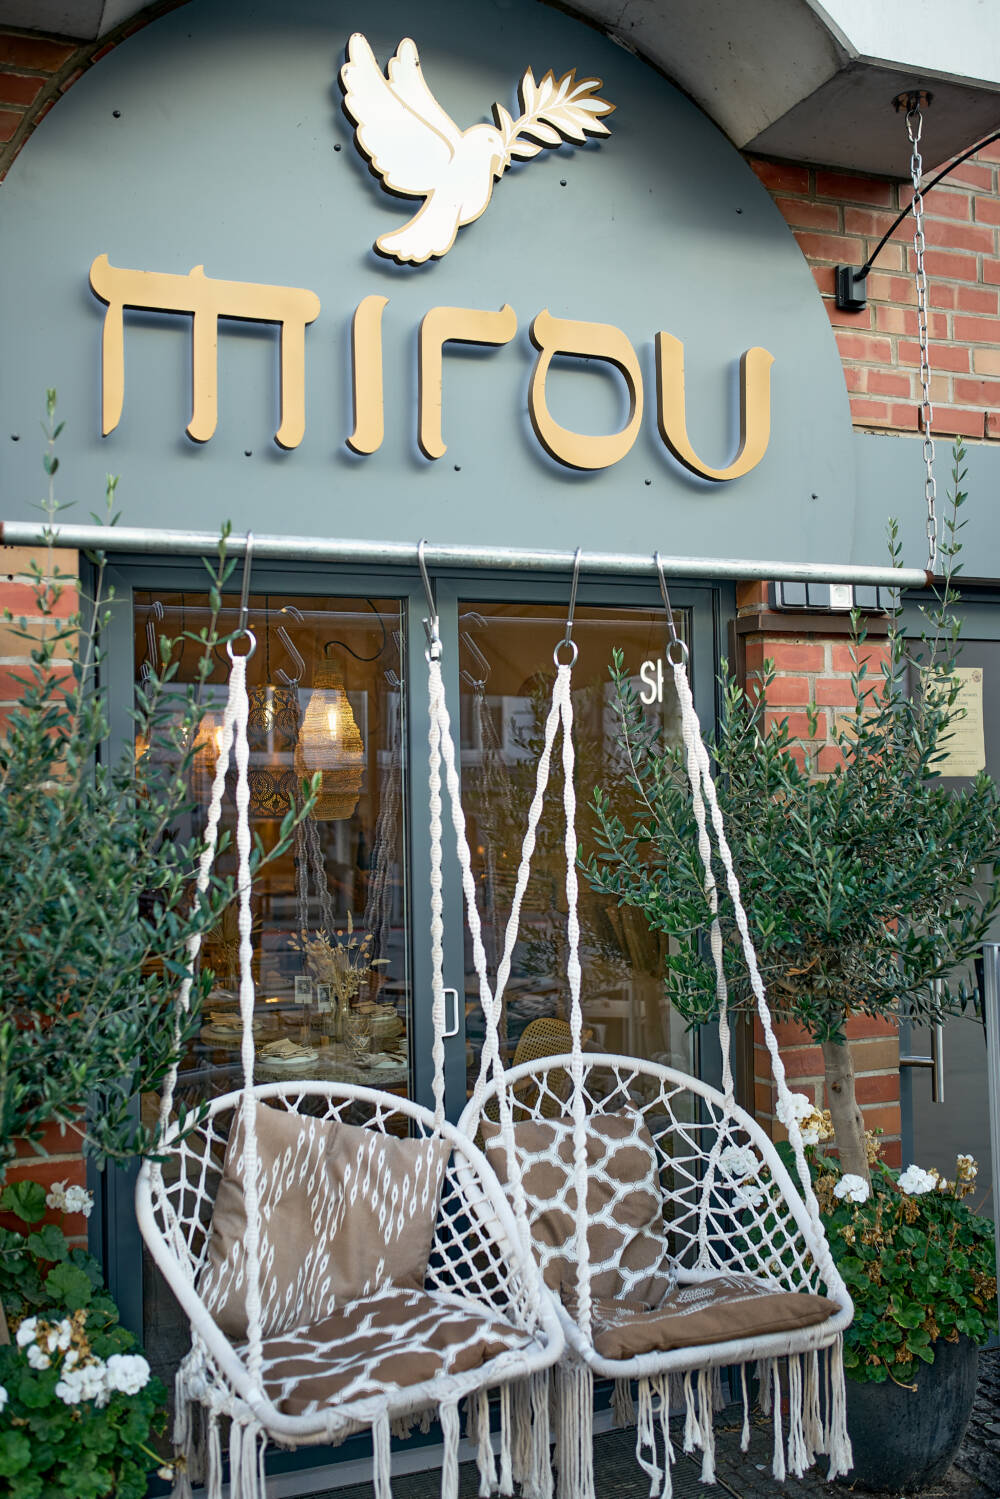 Das Mirou ist seit Jahren eine feste Adresse für gute Küche am Mühlenkamp / ©Marc Sill